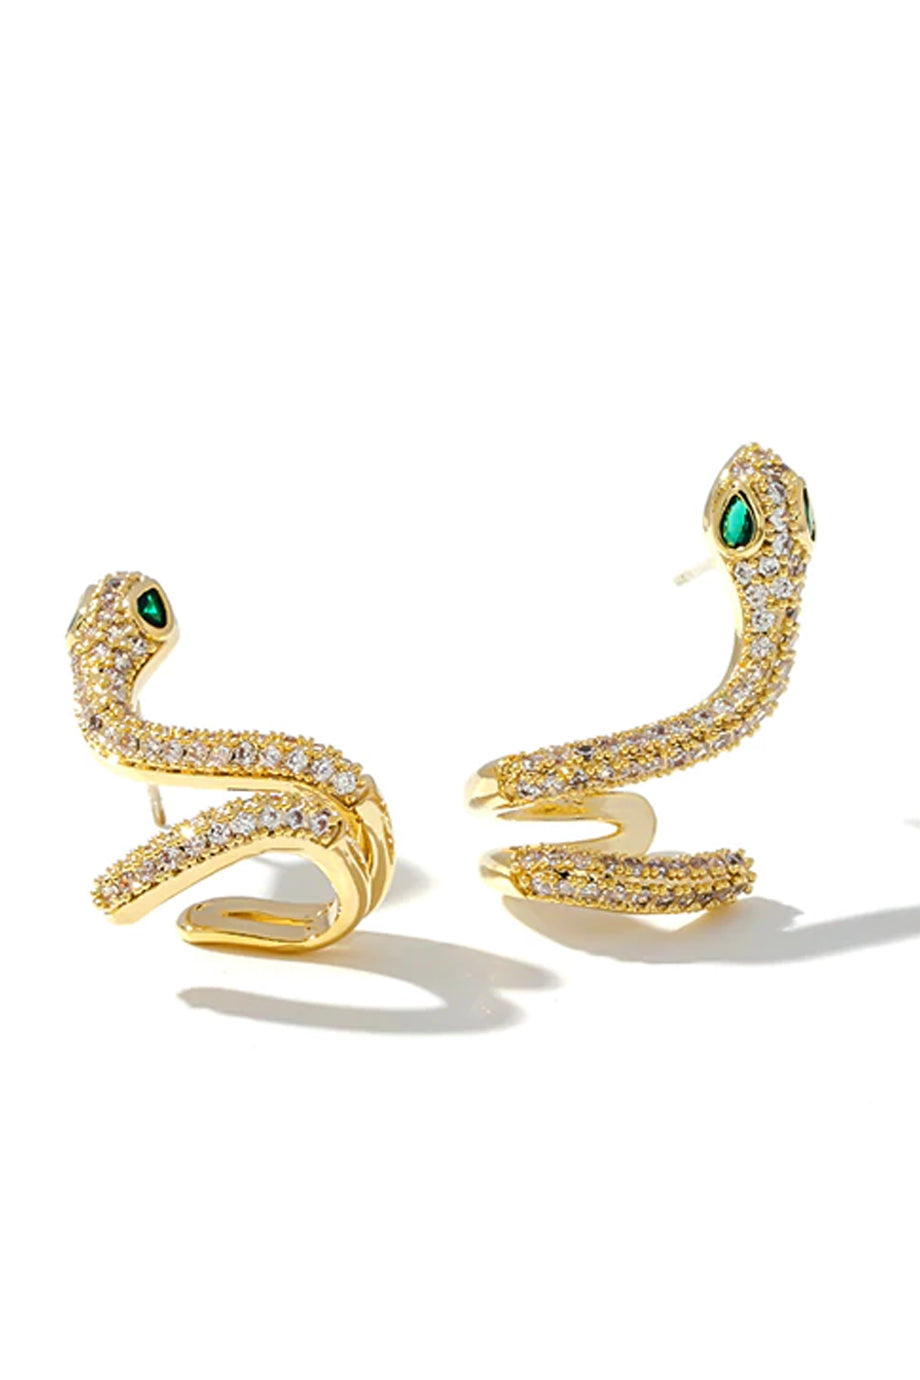 Embry Χρυσά Σκουλαρίκια Φίδι με Κρύσταλλα | Κοσμήματα - Σκουλαρίκια